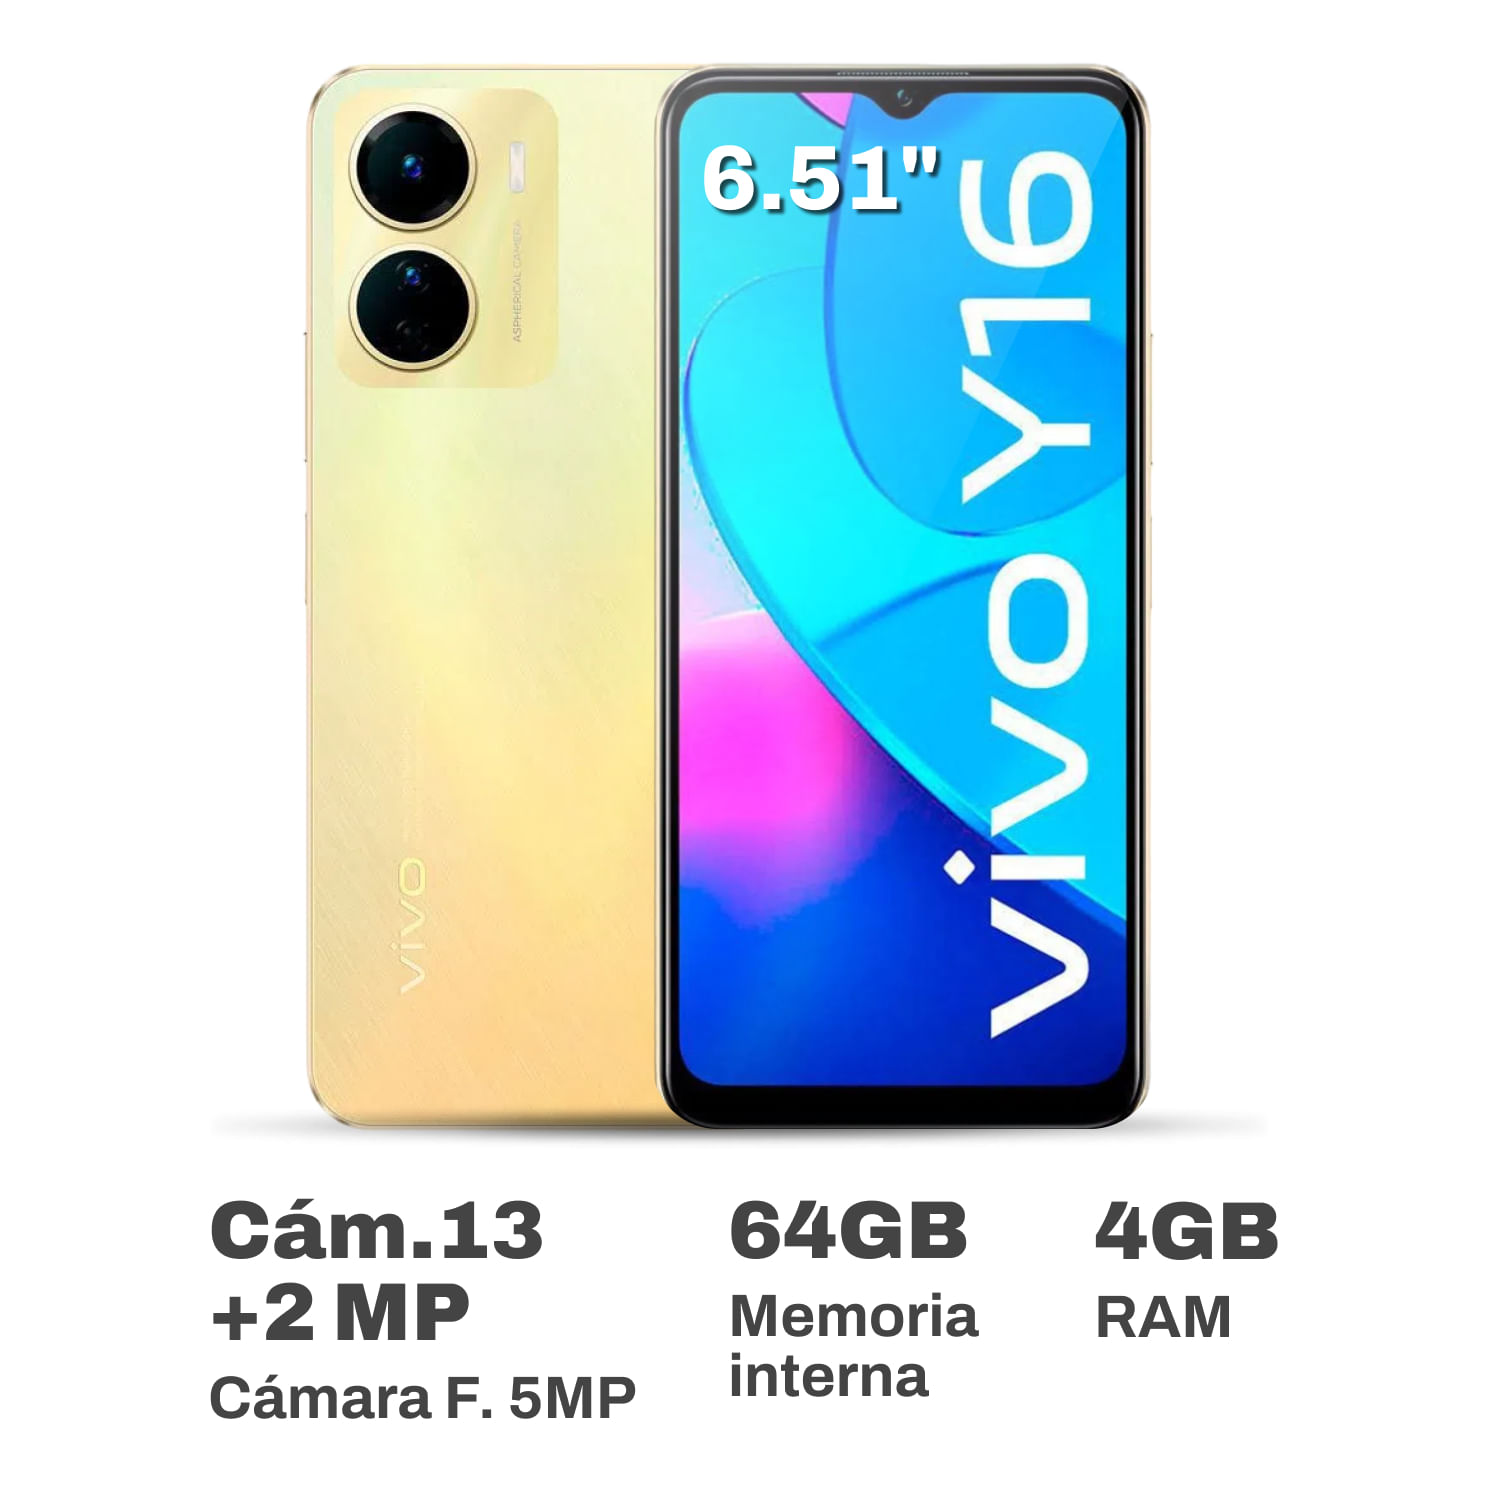 Celular Vivo Y16 6.51" 4GB RAM 64GB Dorado Llovizna